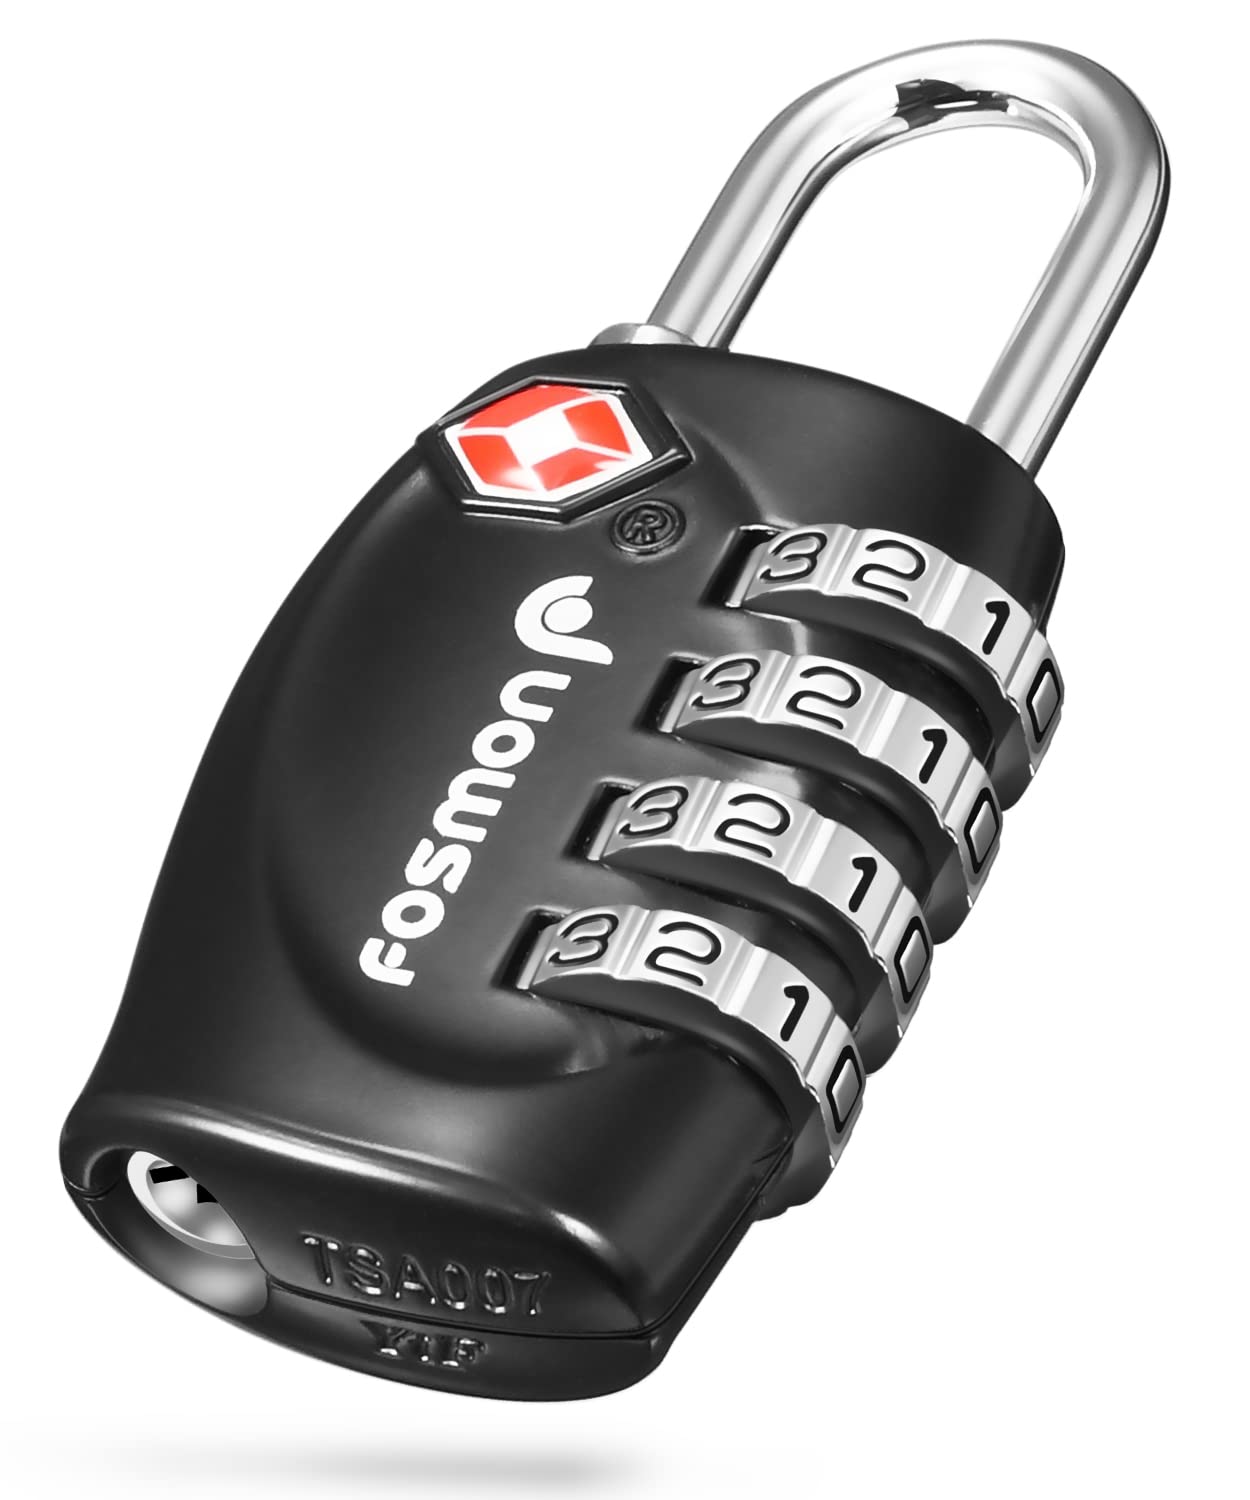 Fosmon (1個セット) TSAロック認定 4桁ダイヤルロック 南京錠の鍵 海外旅行荷物スーツケース用 4ダイヤルロック (ブラック) (1Pack)